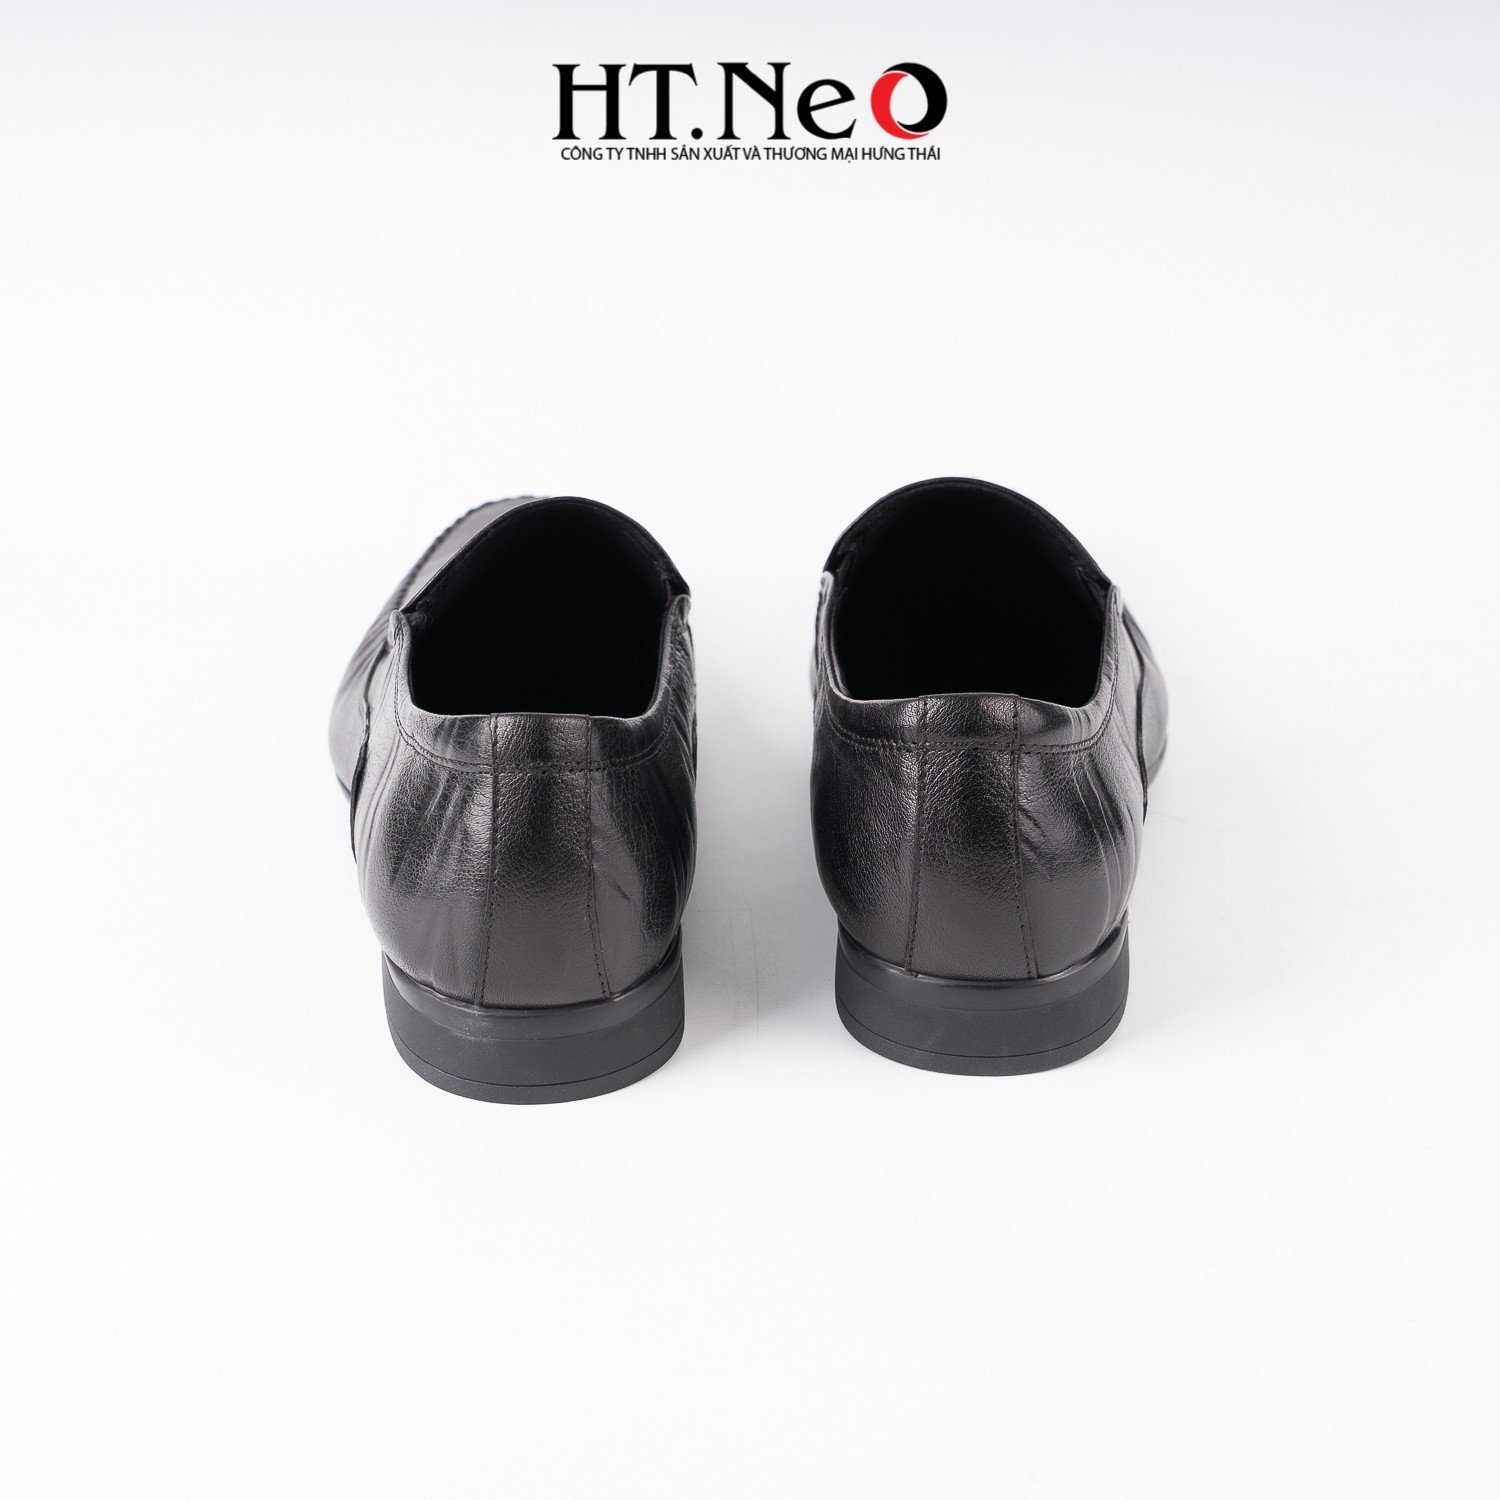 Giày mọi nam, giày da nam cao cấp chất da đẹp, đế kếp cao khoảng 3p, thiết kế sang trọng, trẻ trung, đơn giản với điểm nhấn là khuy nhỏ kim loại trên giày GM169